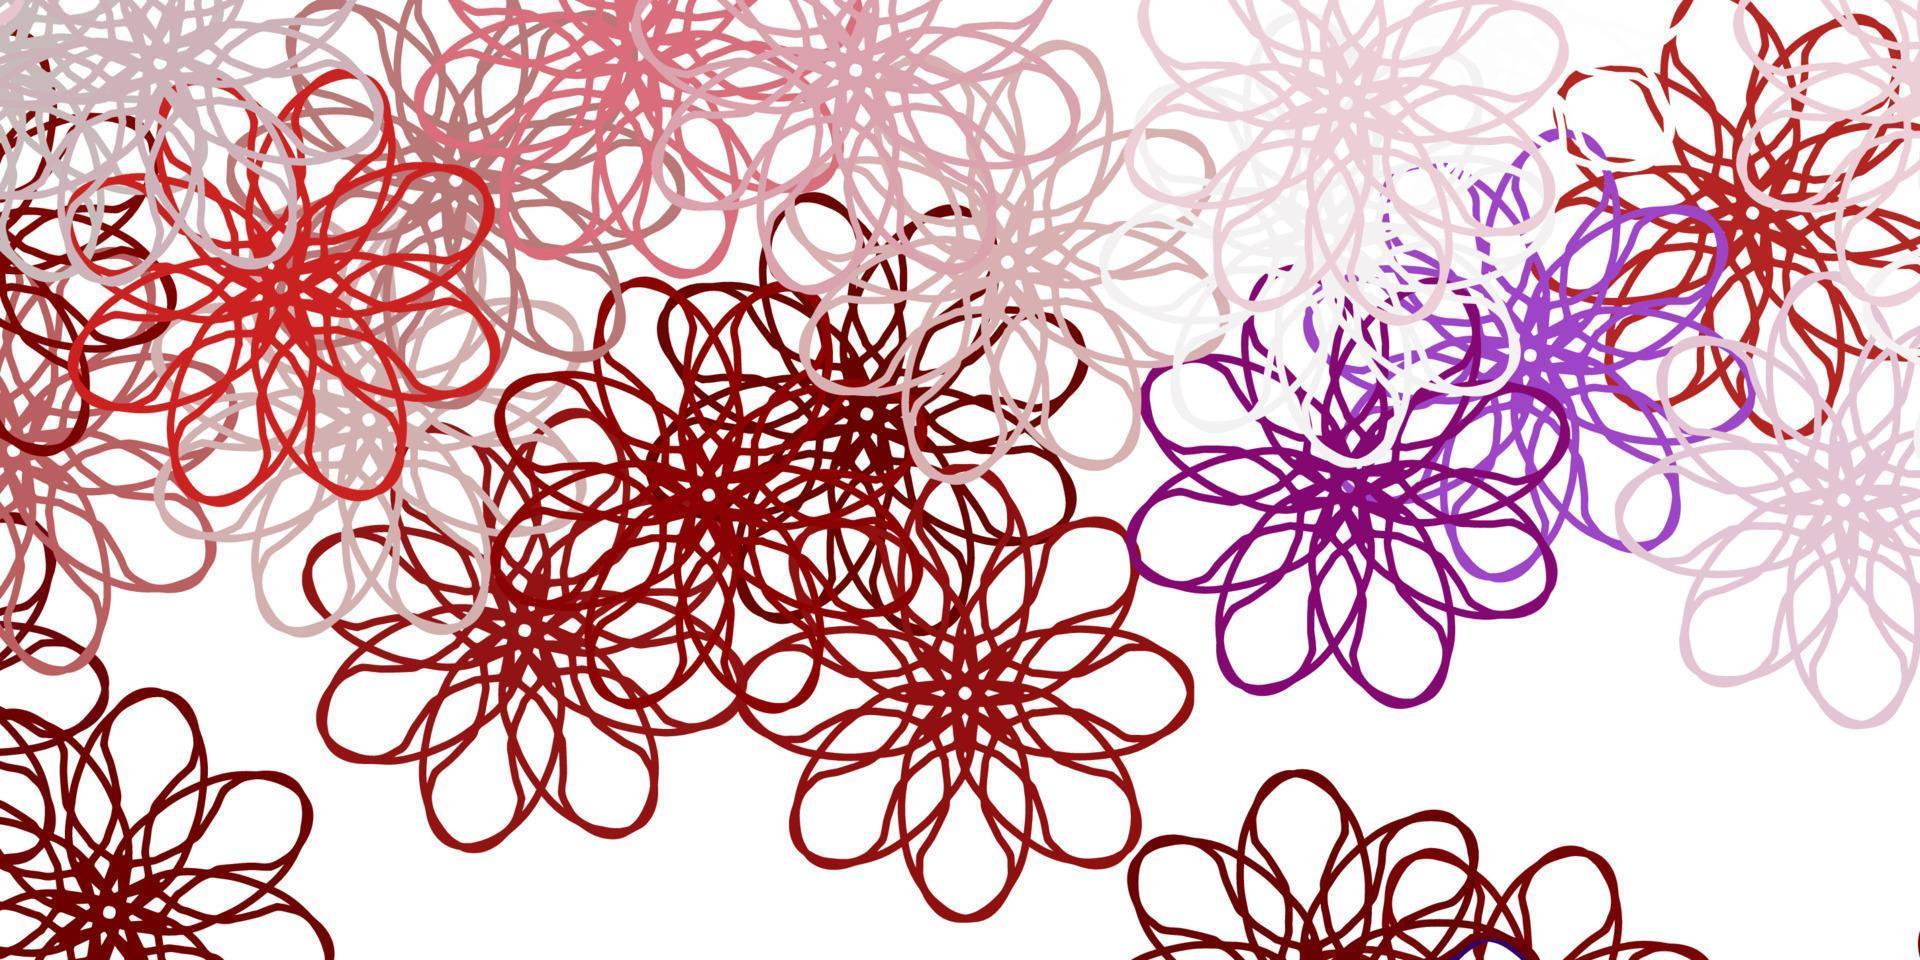 motif de doodle vecteur rose clair, rouge avec des fleurs.